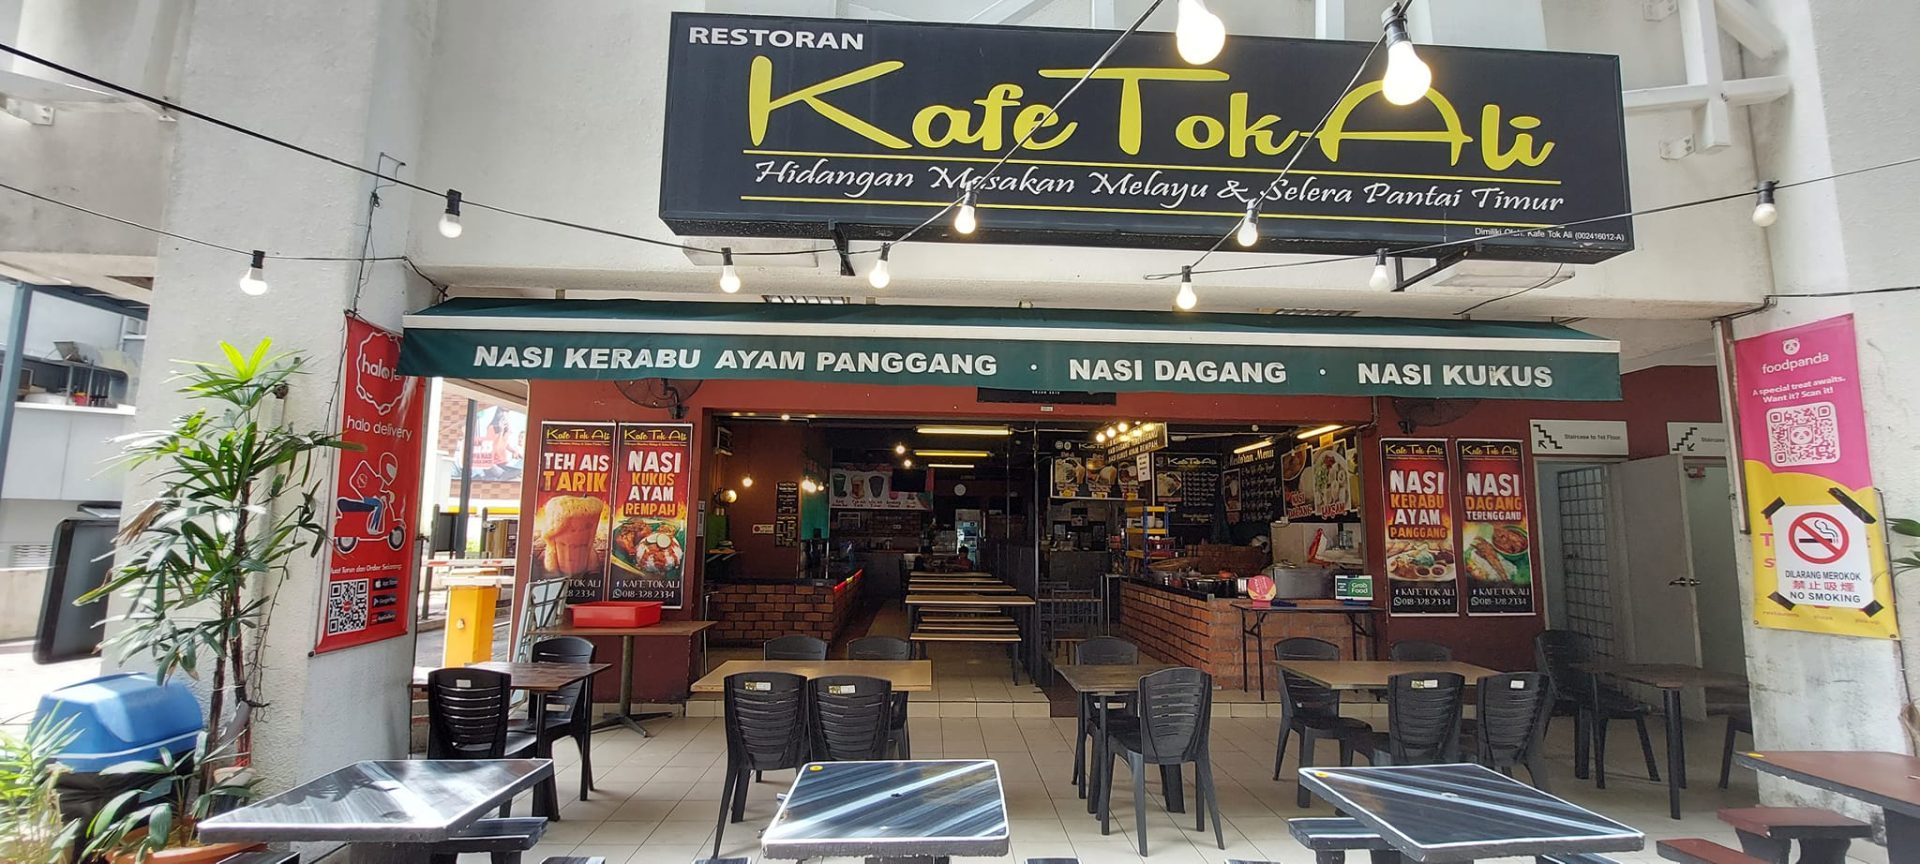 Sedap! 12 Kedai Makan Kelana Jaya (Honest Review) 2023 7. Kedai Makan Tengahari di Kelana Jaya Kafe Tok Ali Kelana Jaya